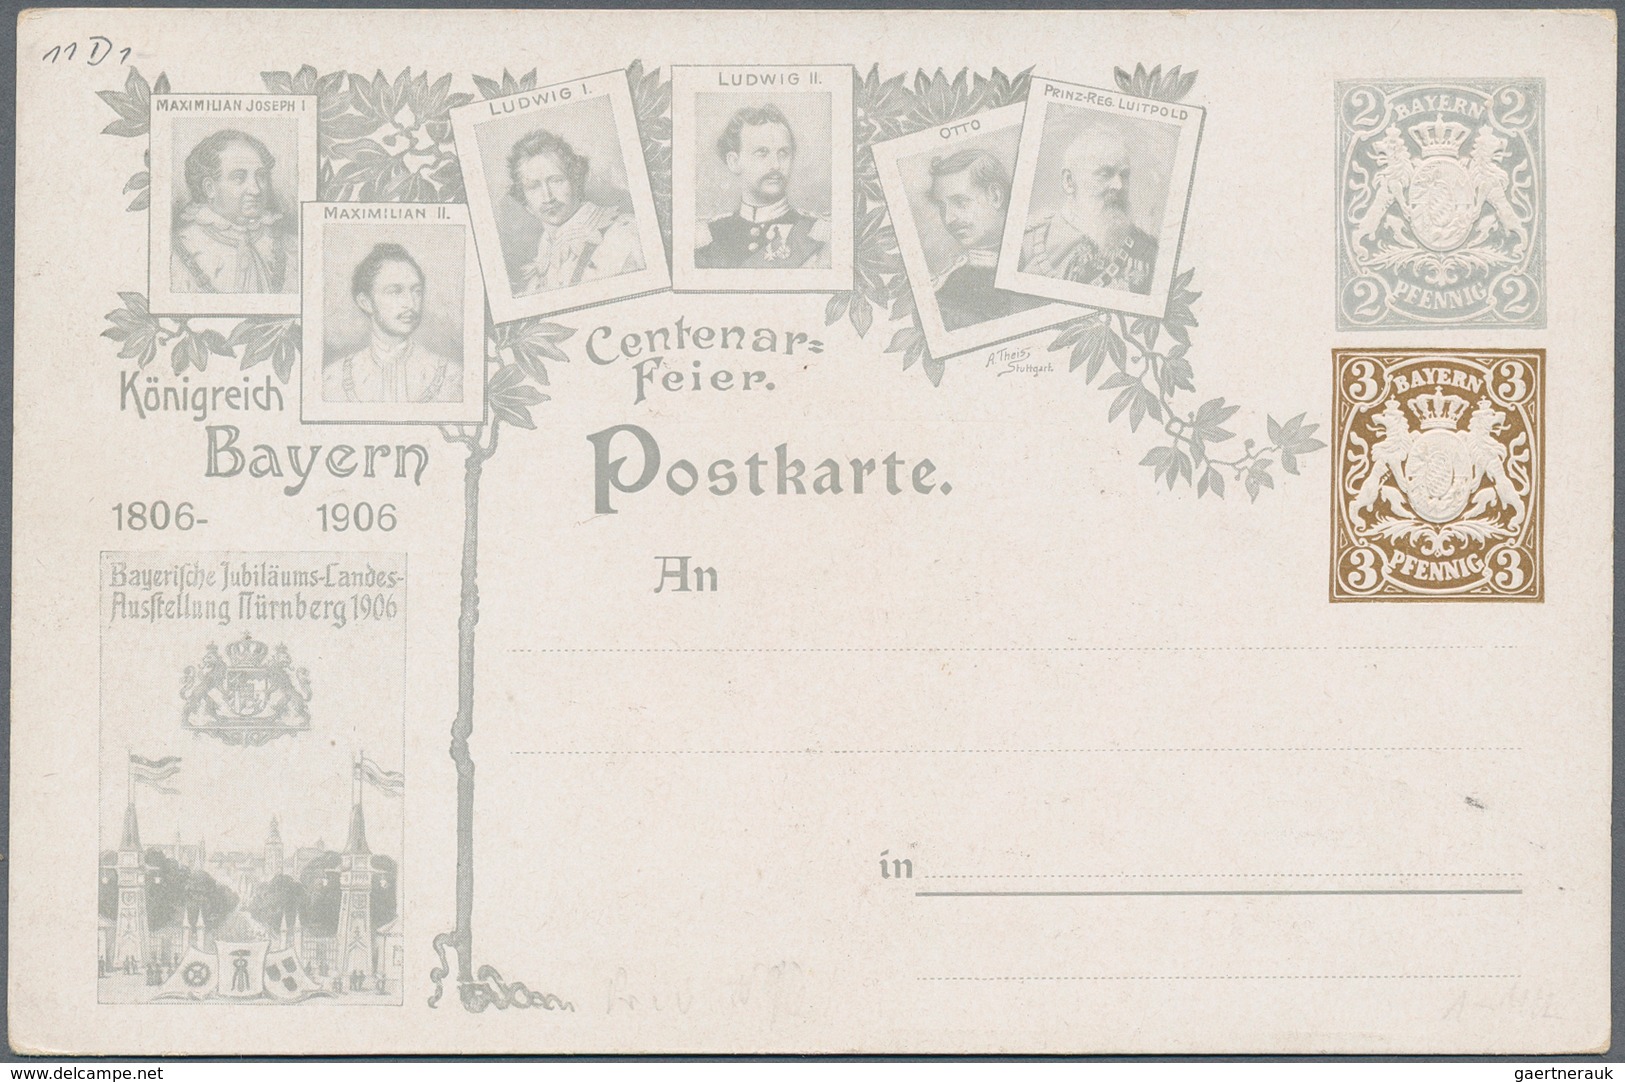 Bayern - Marken und Briefe: 1717/1920 ca., gehaltvoller Posten mit ca.100 Belegen, dabei 60 Briefe e